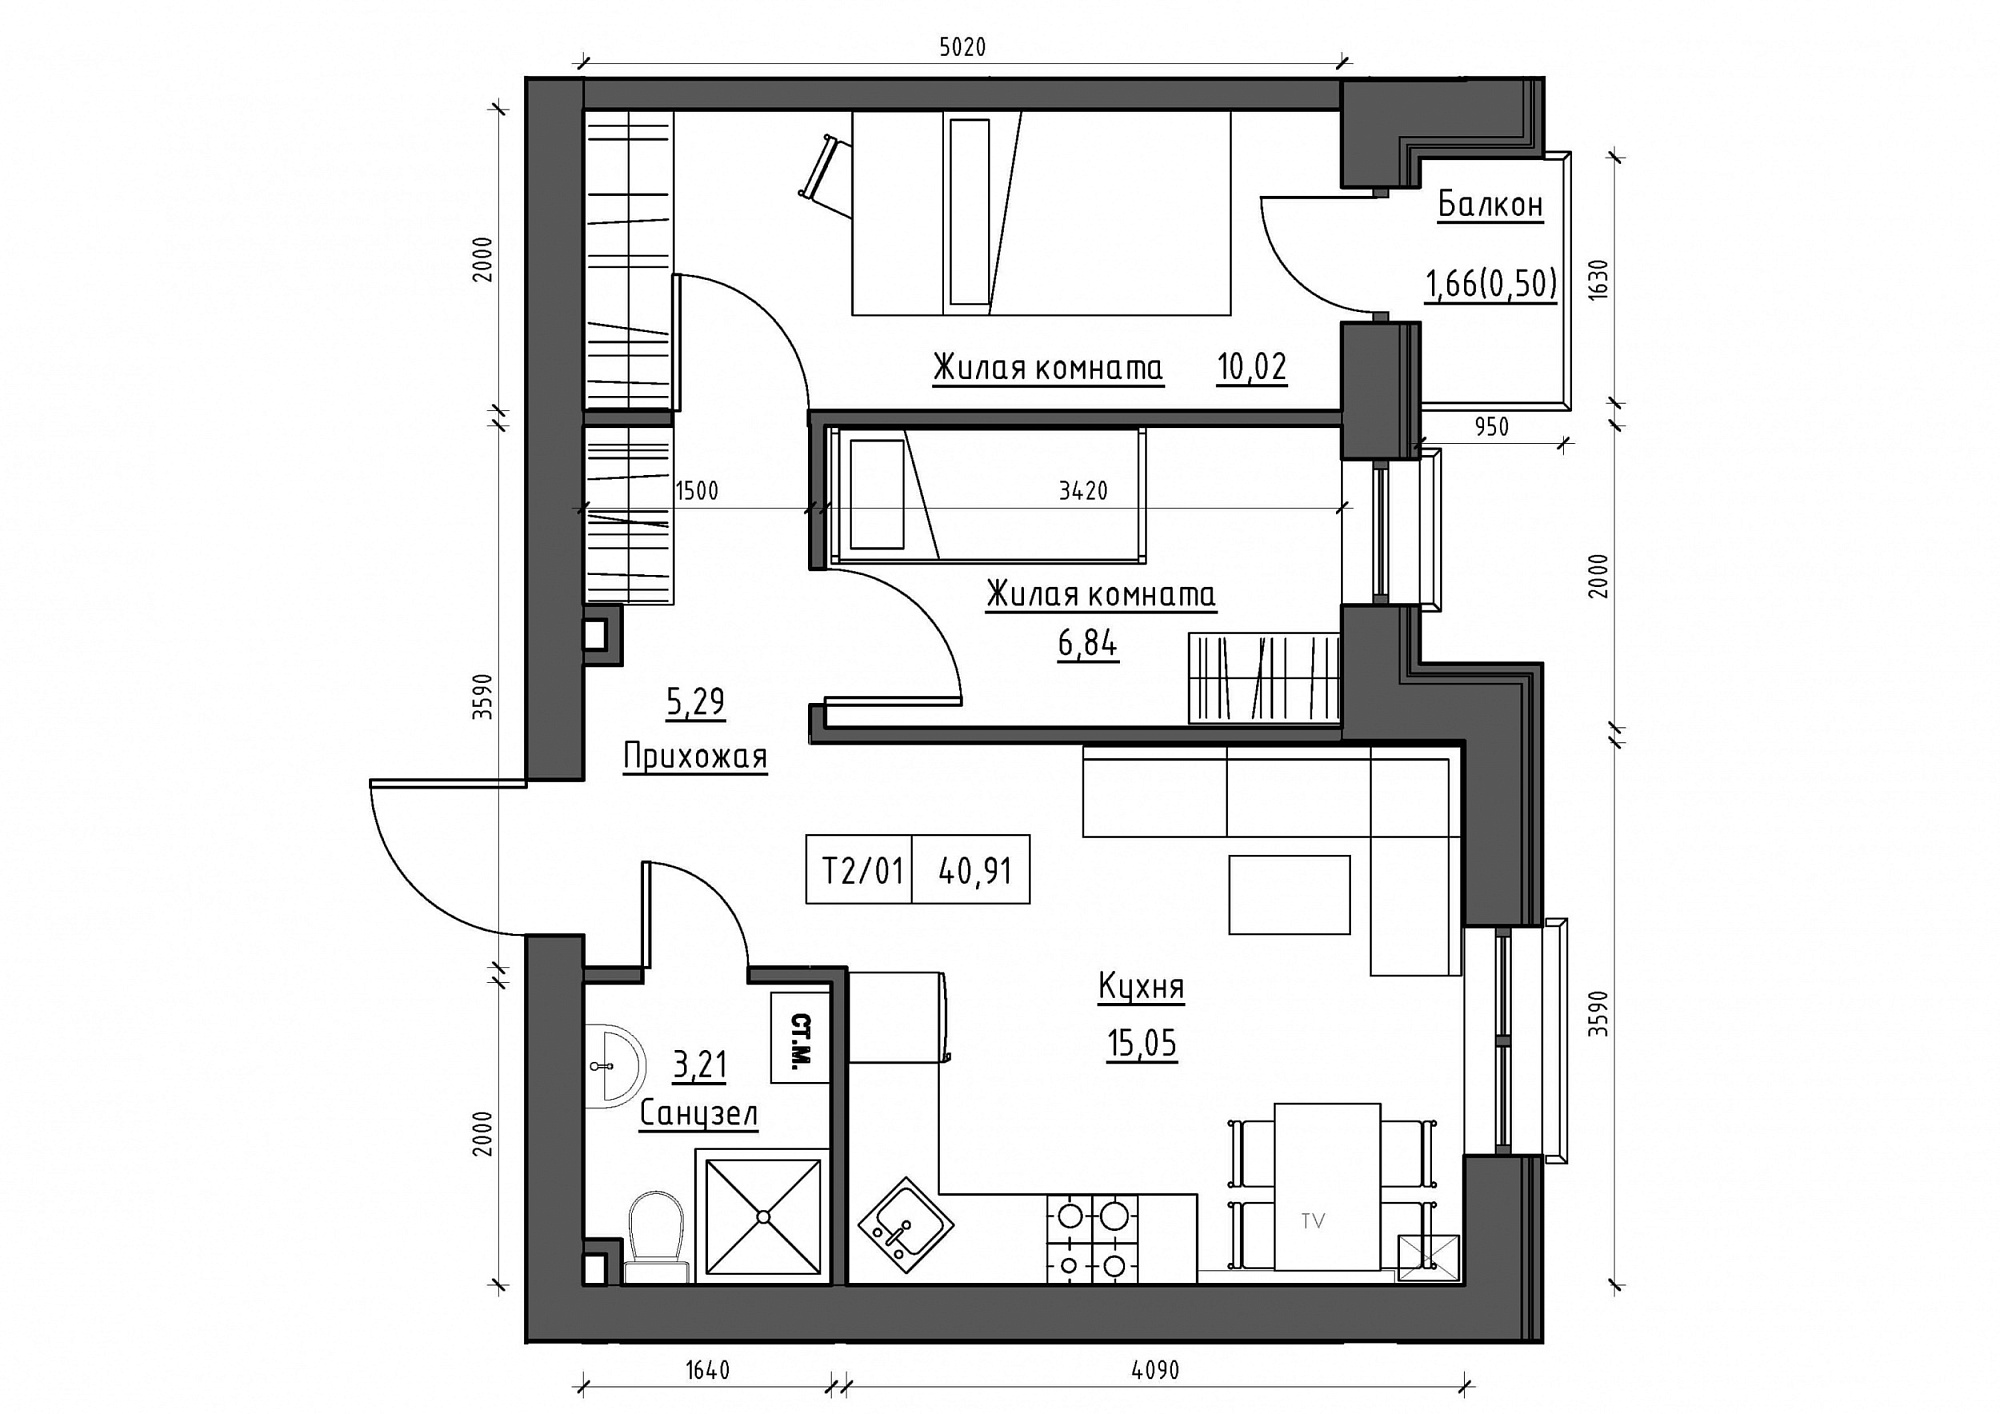 Планировка 2-к квартира площей 40.91м2, KS-011-03/0006.